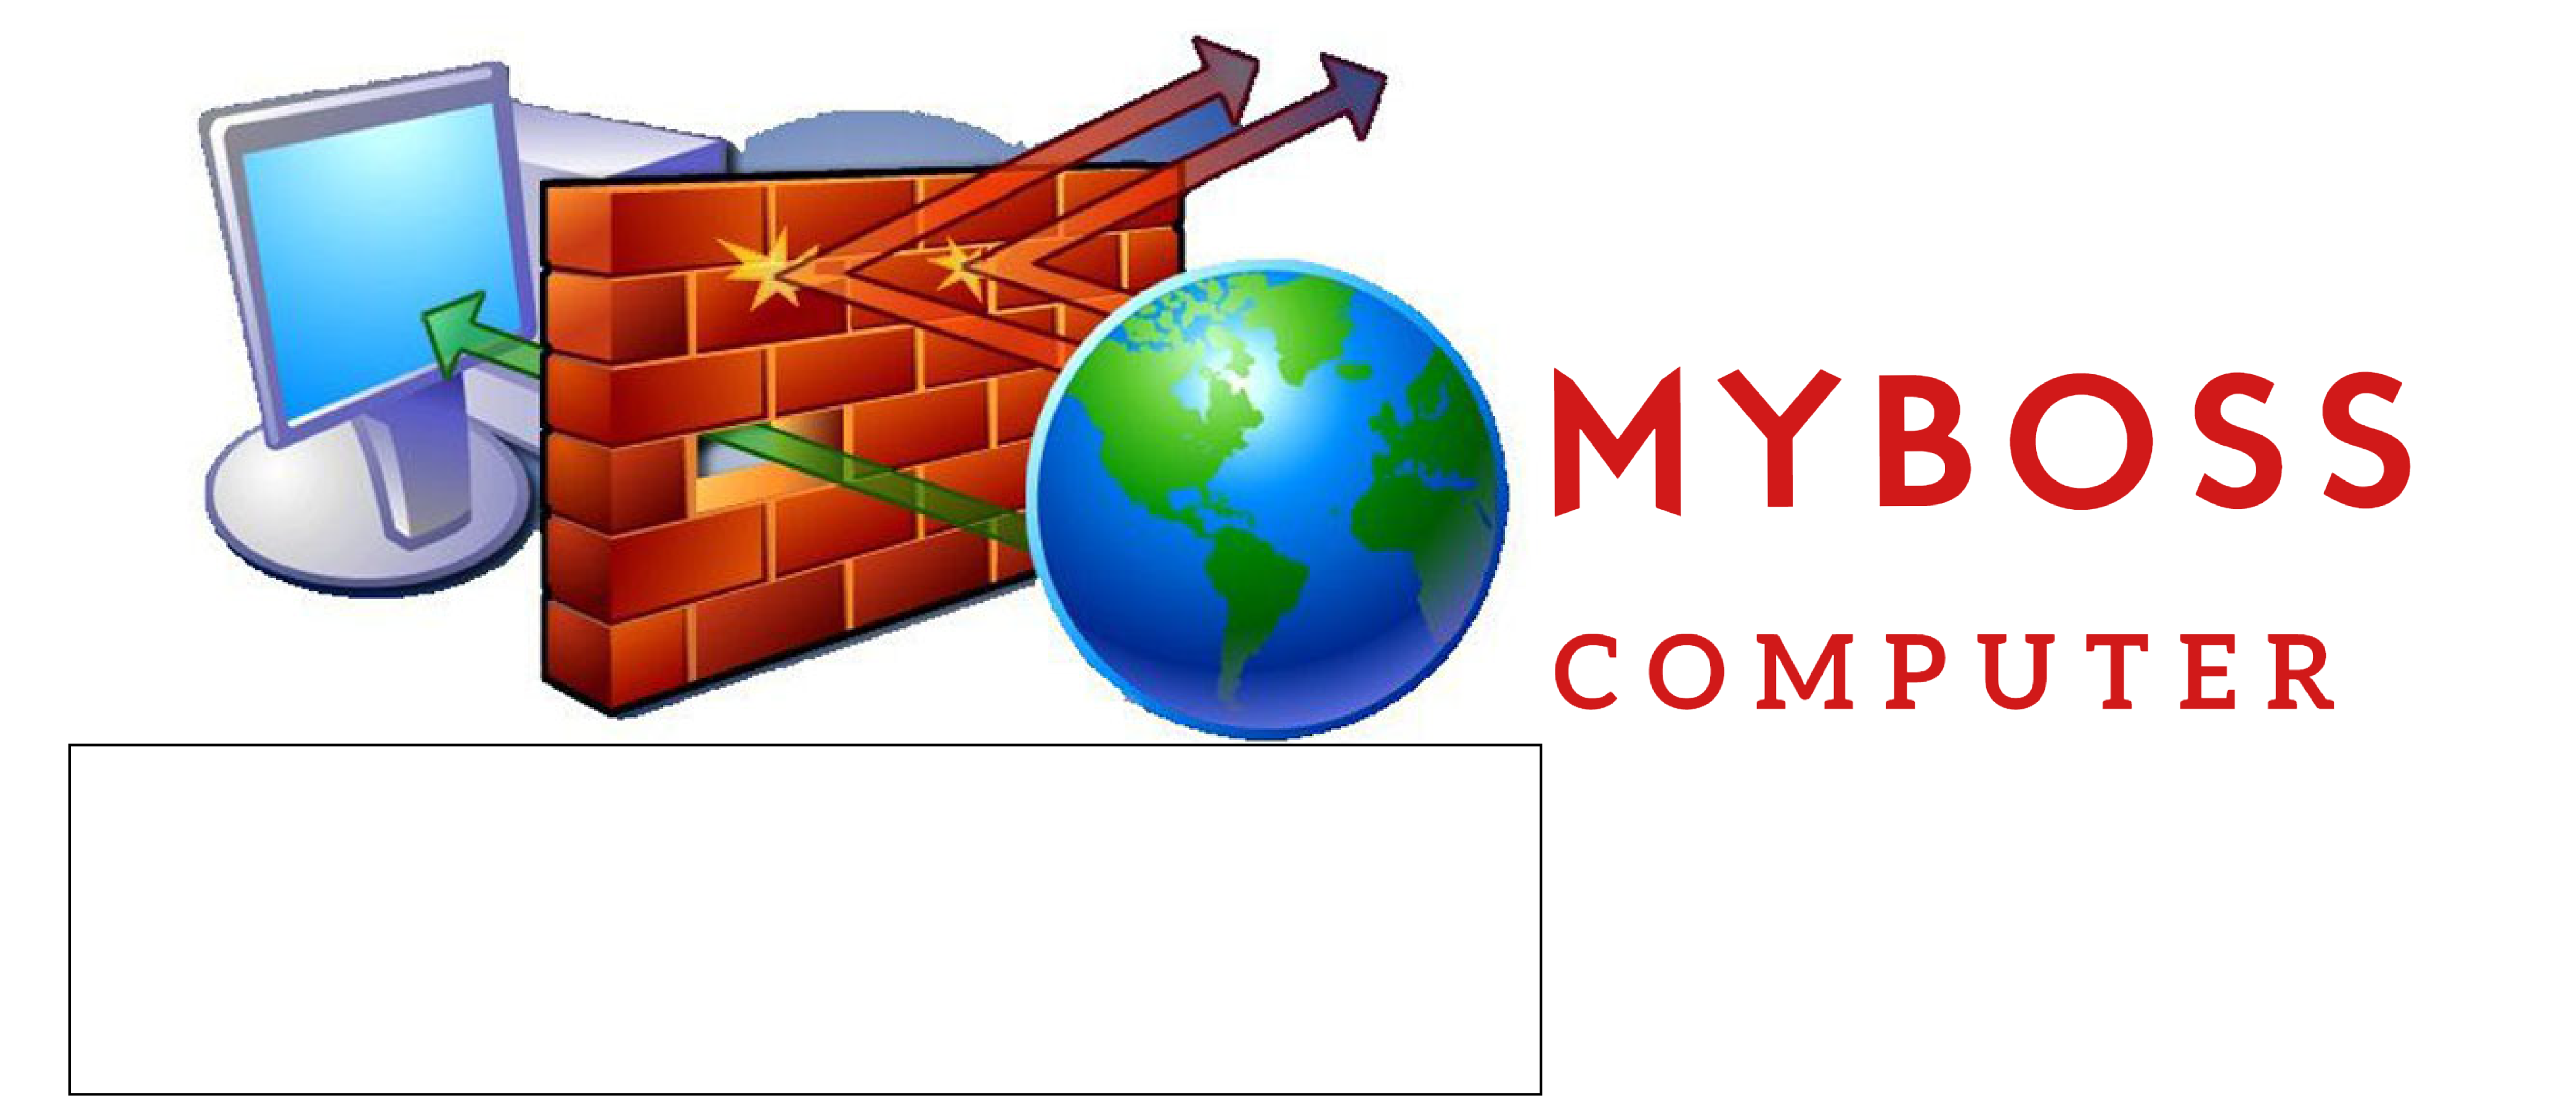 Myboss hướng dẫn cách truy cập web tự do mà không bị chặn